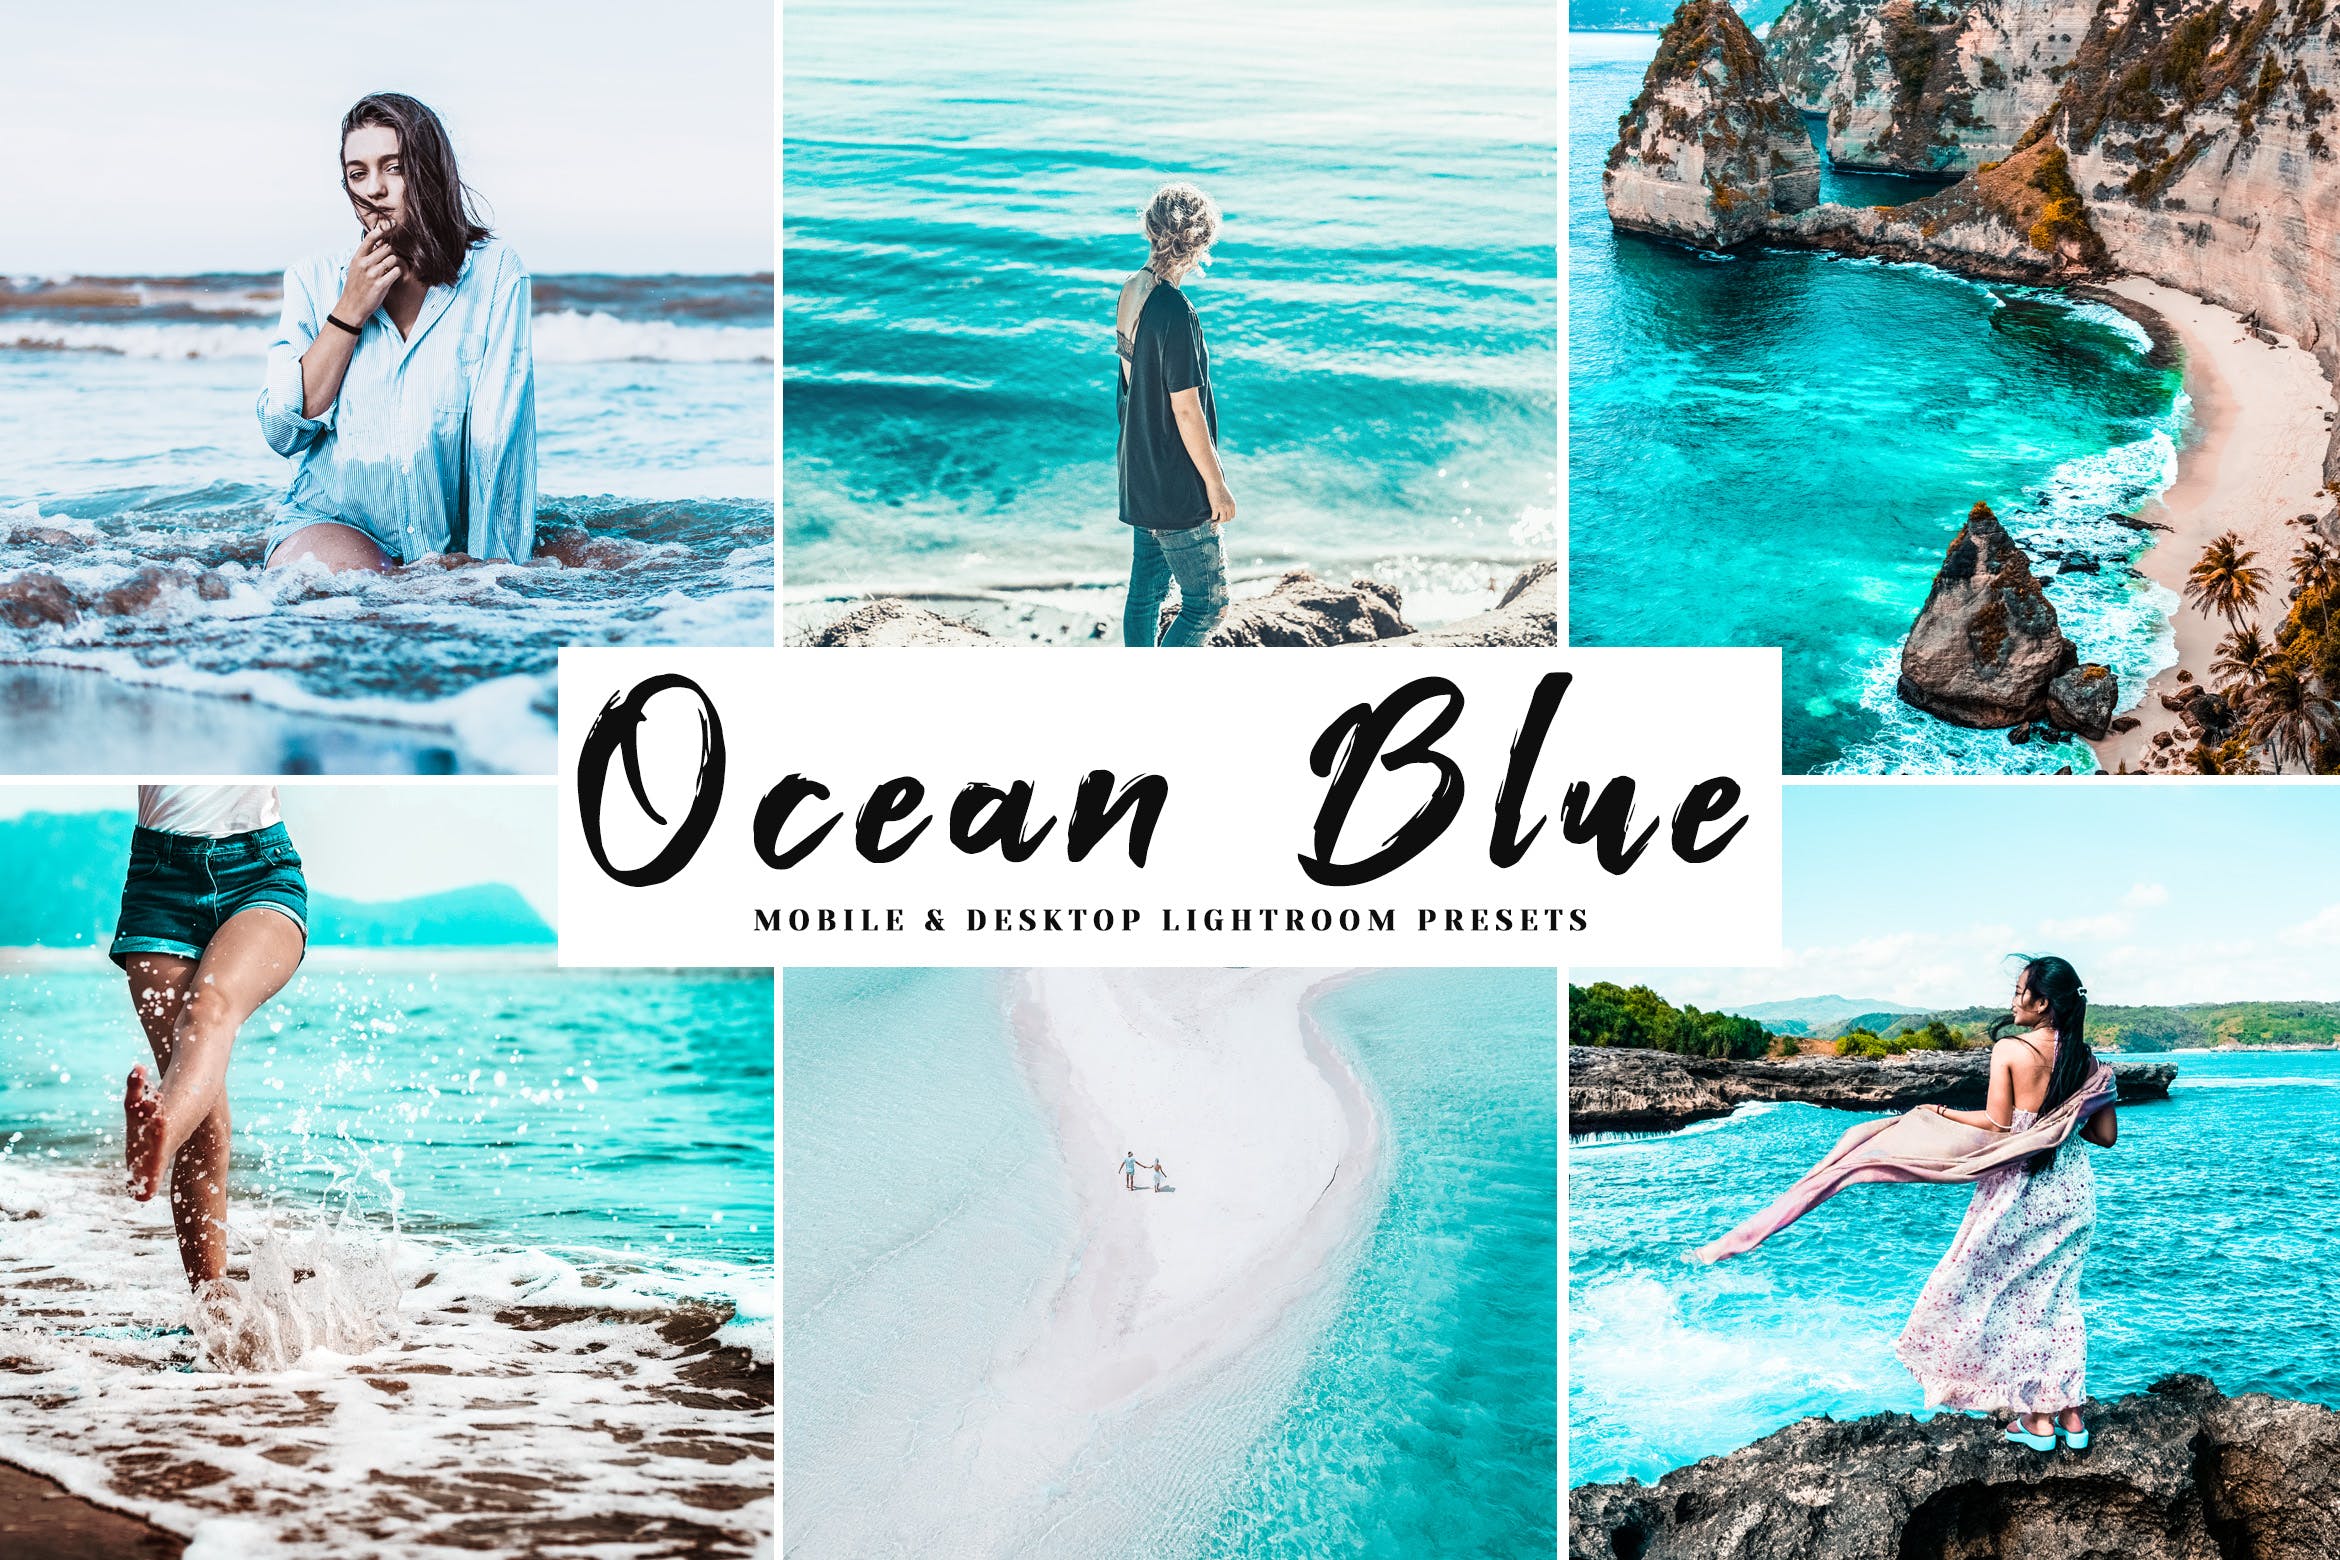 海洋蓝调色滤镜蚂蚁素材精选LR预设-海岛/沙滩/大海摄影调色绝配 Ocean Blue Mobile & Desktop Lightroom Presets插图